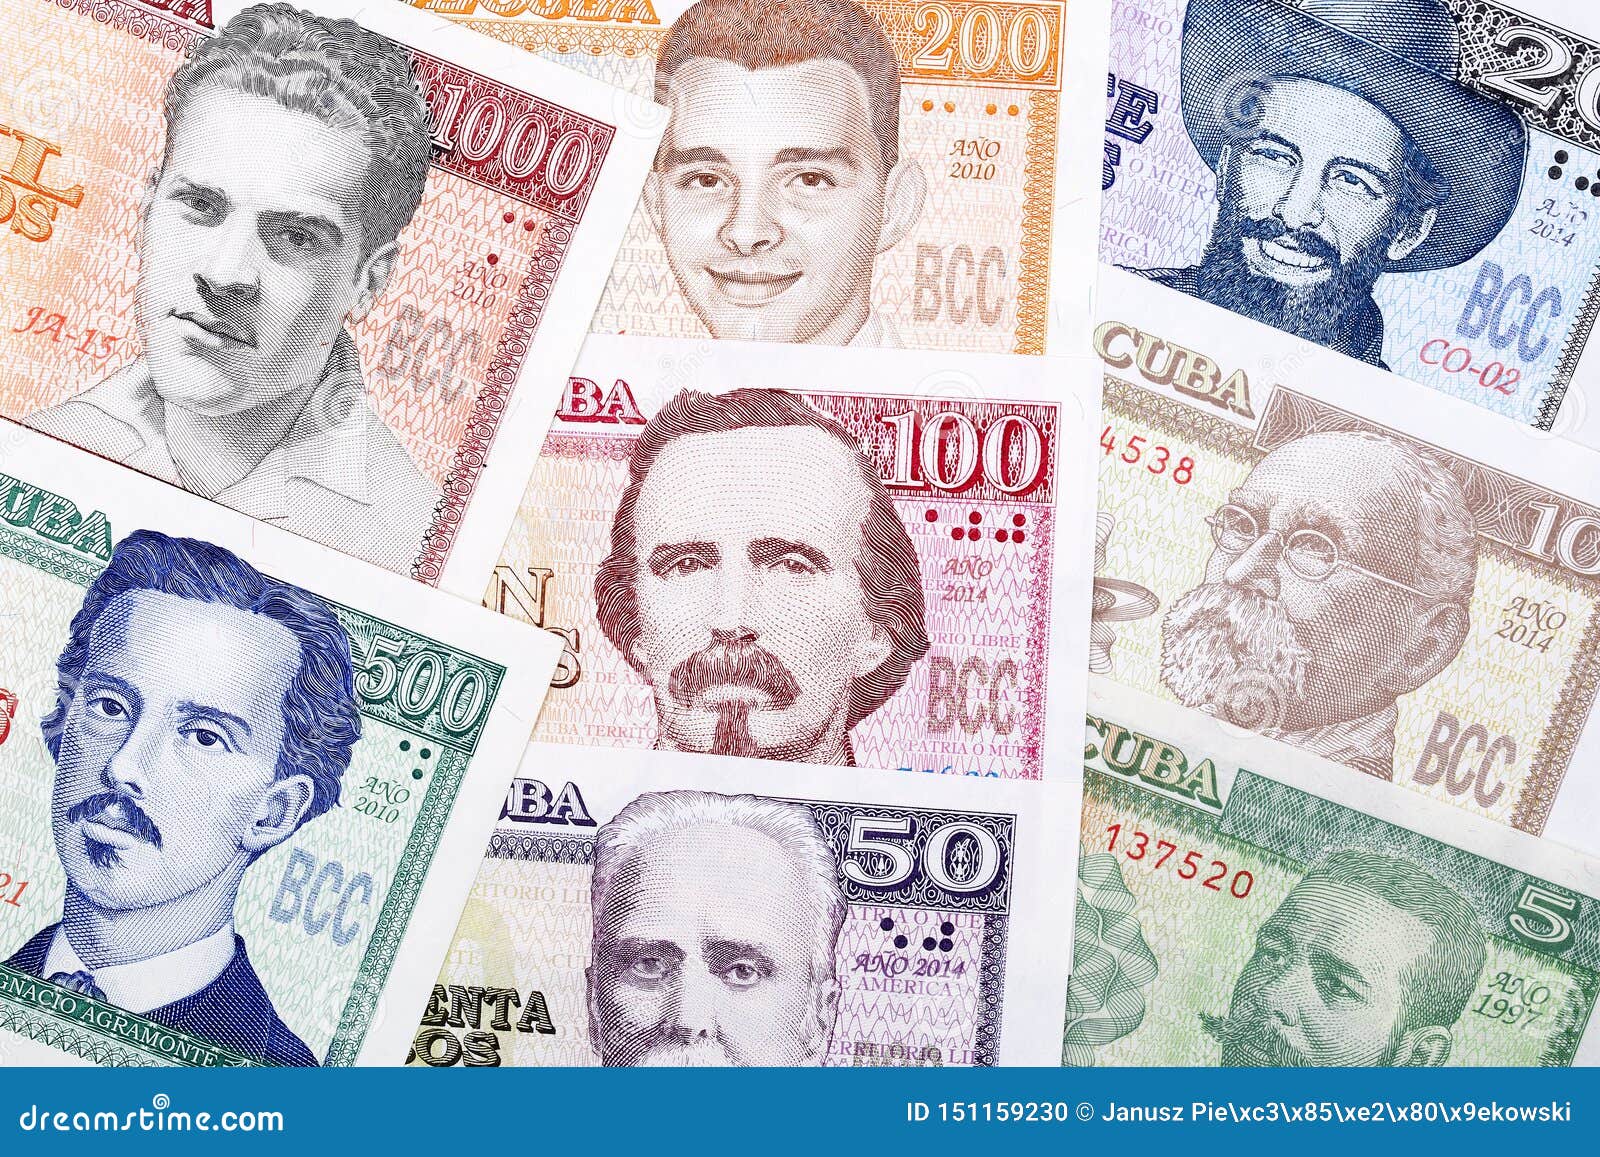 Куба доллары или евро. Кубинский песо. Куба валюта. Кубинская валюта песо. Кубинские песо картинки.